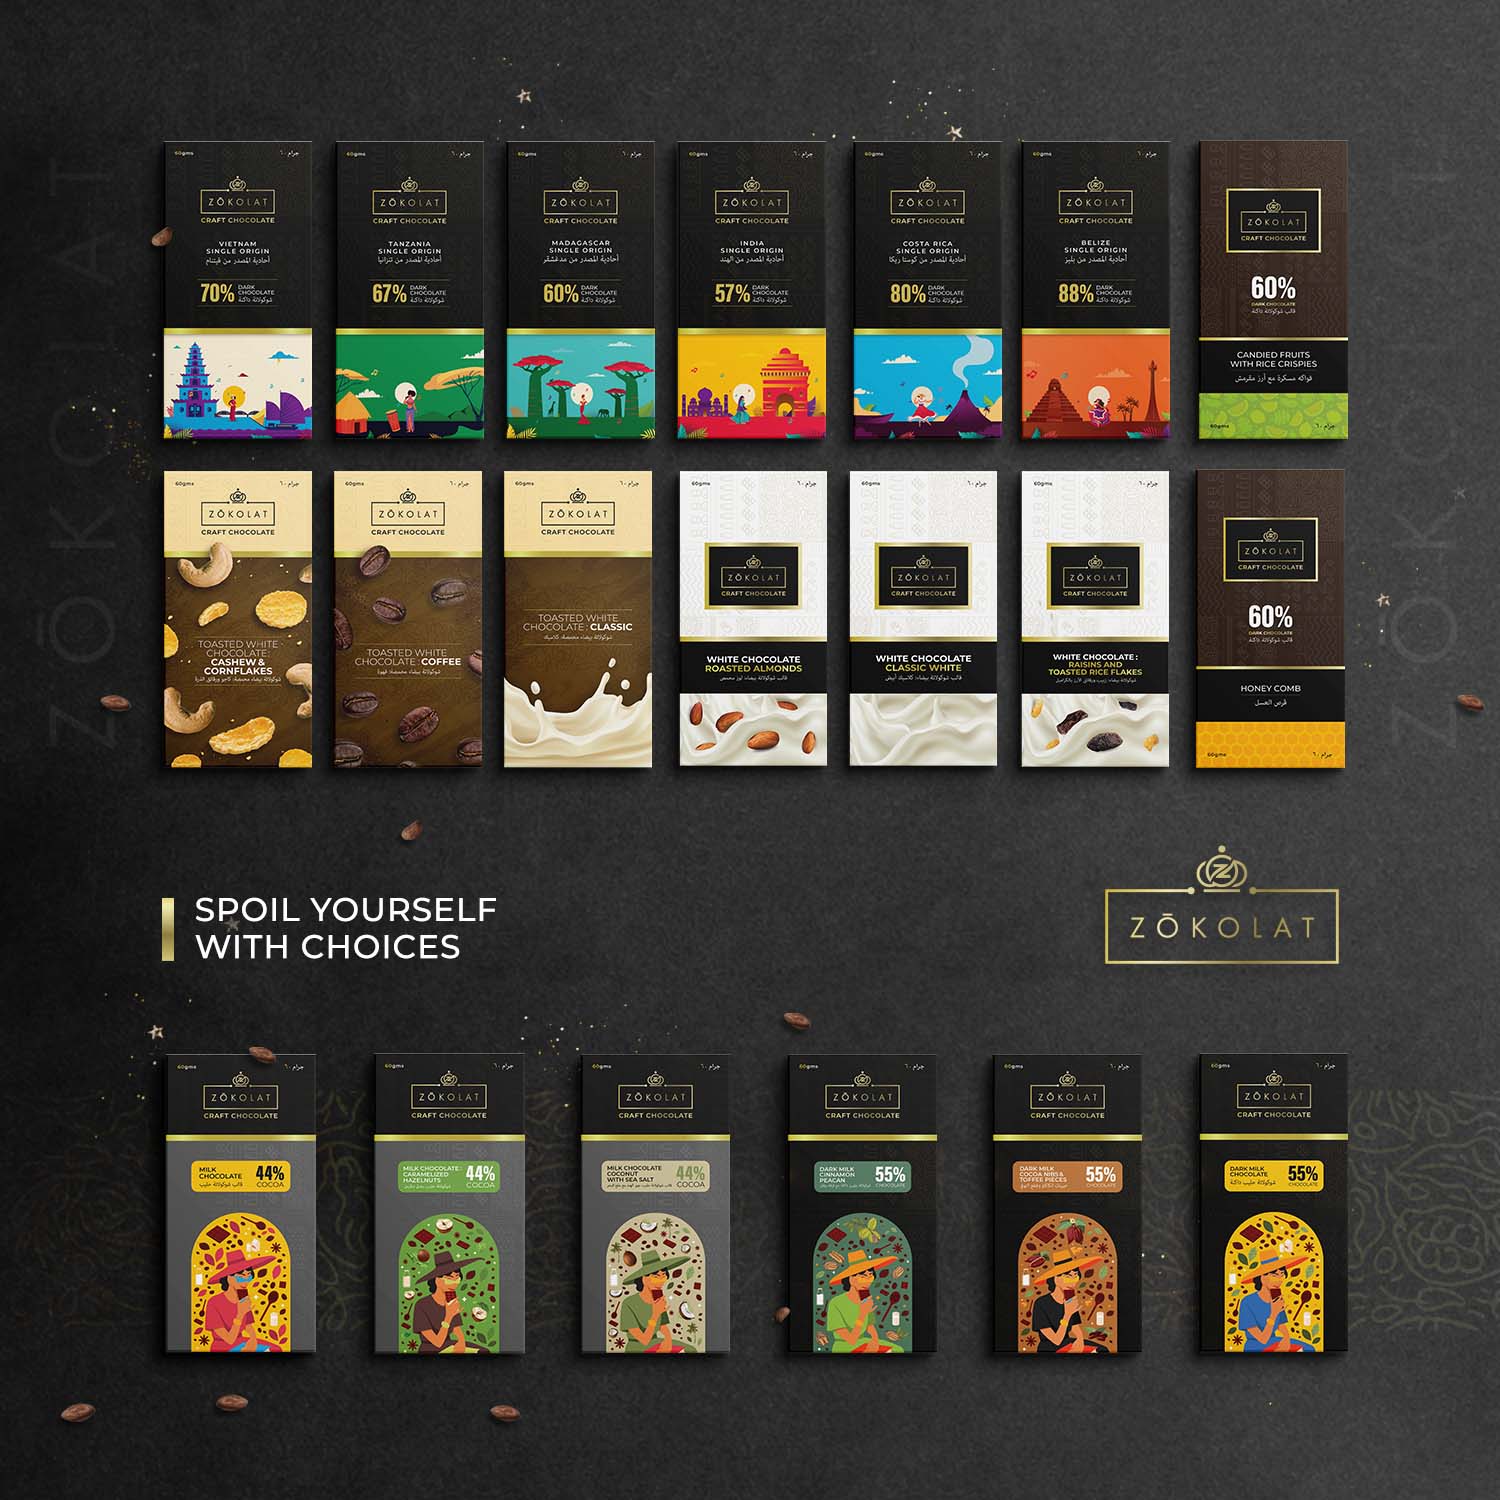 Zokolat: Buy Chocolates Online in Dubai, Delivered to Your Door